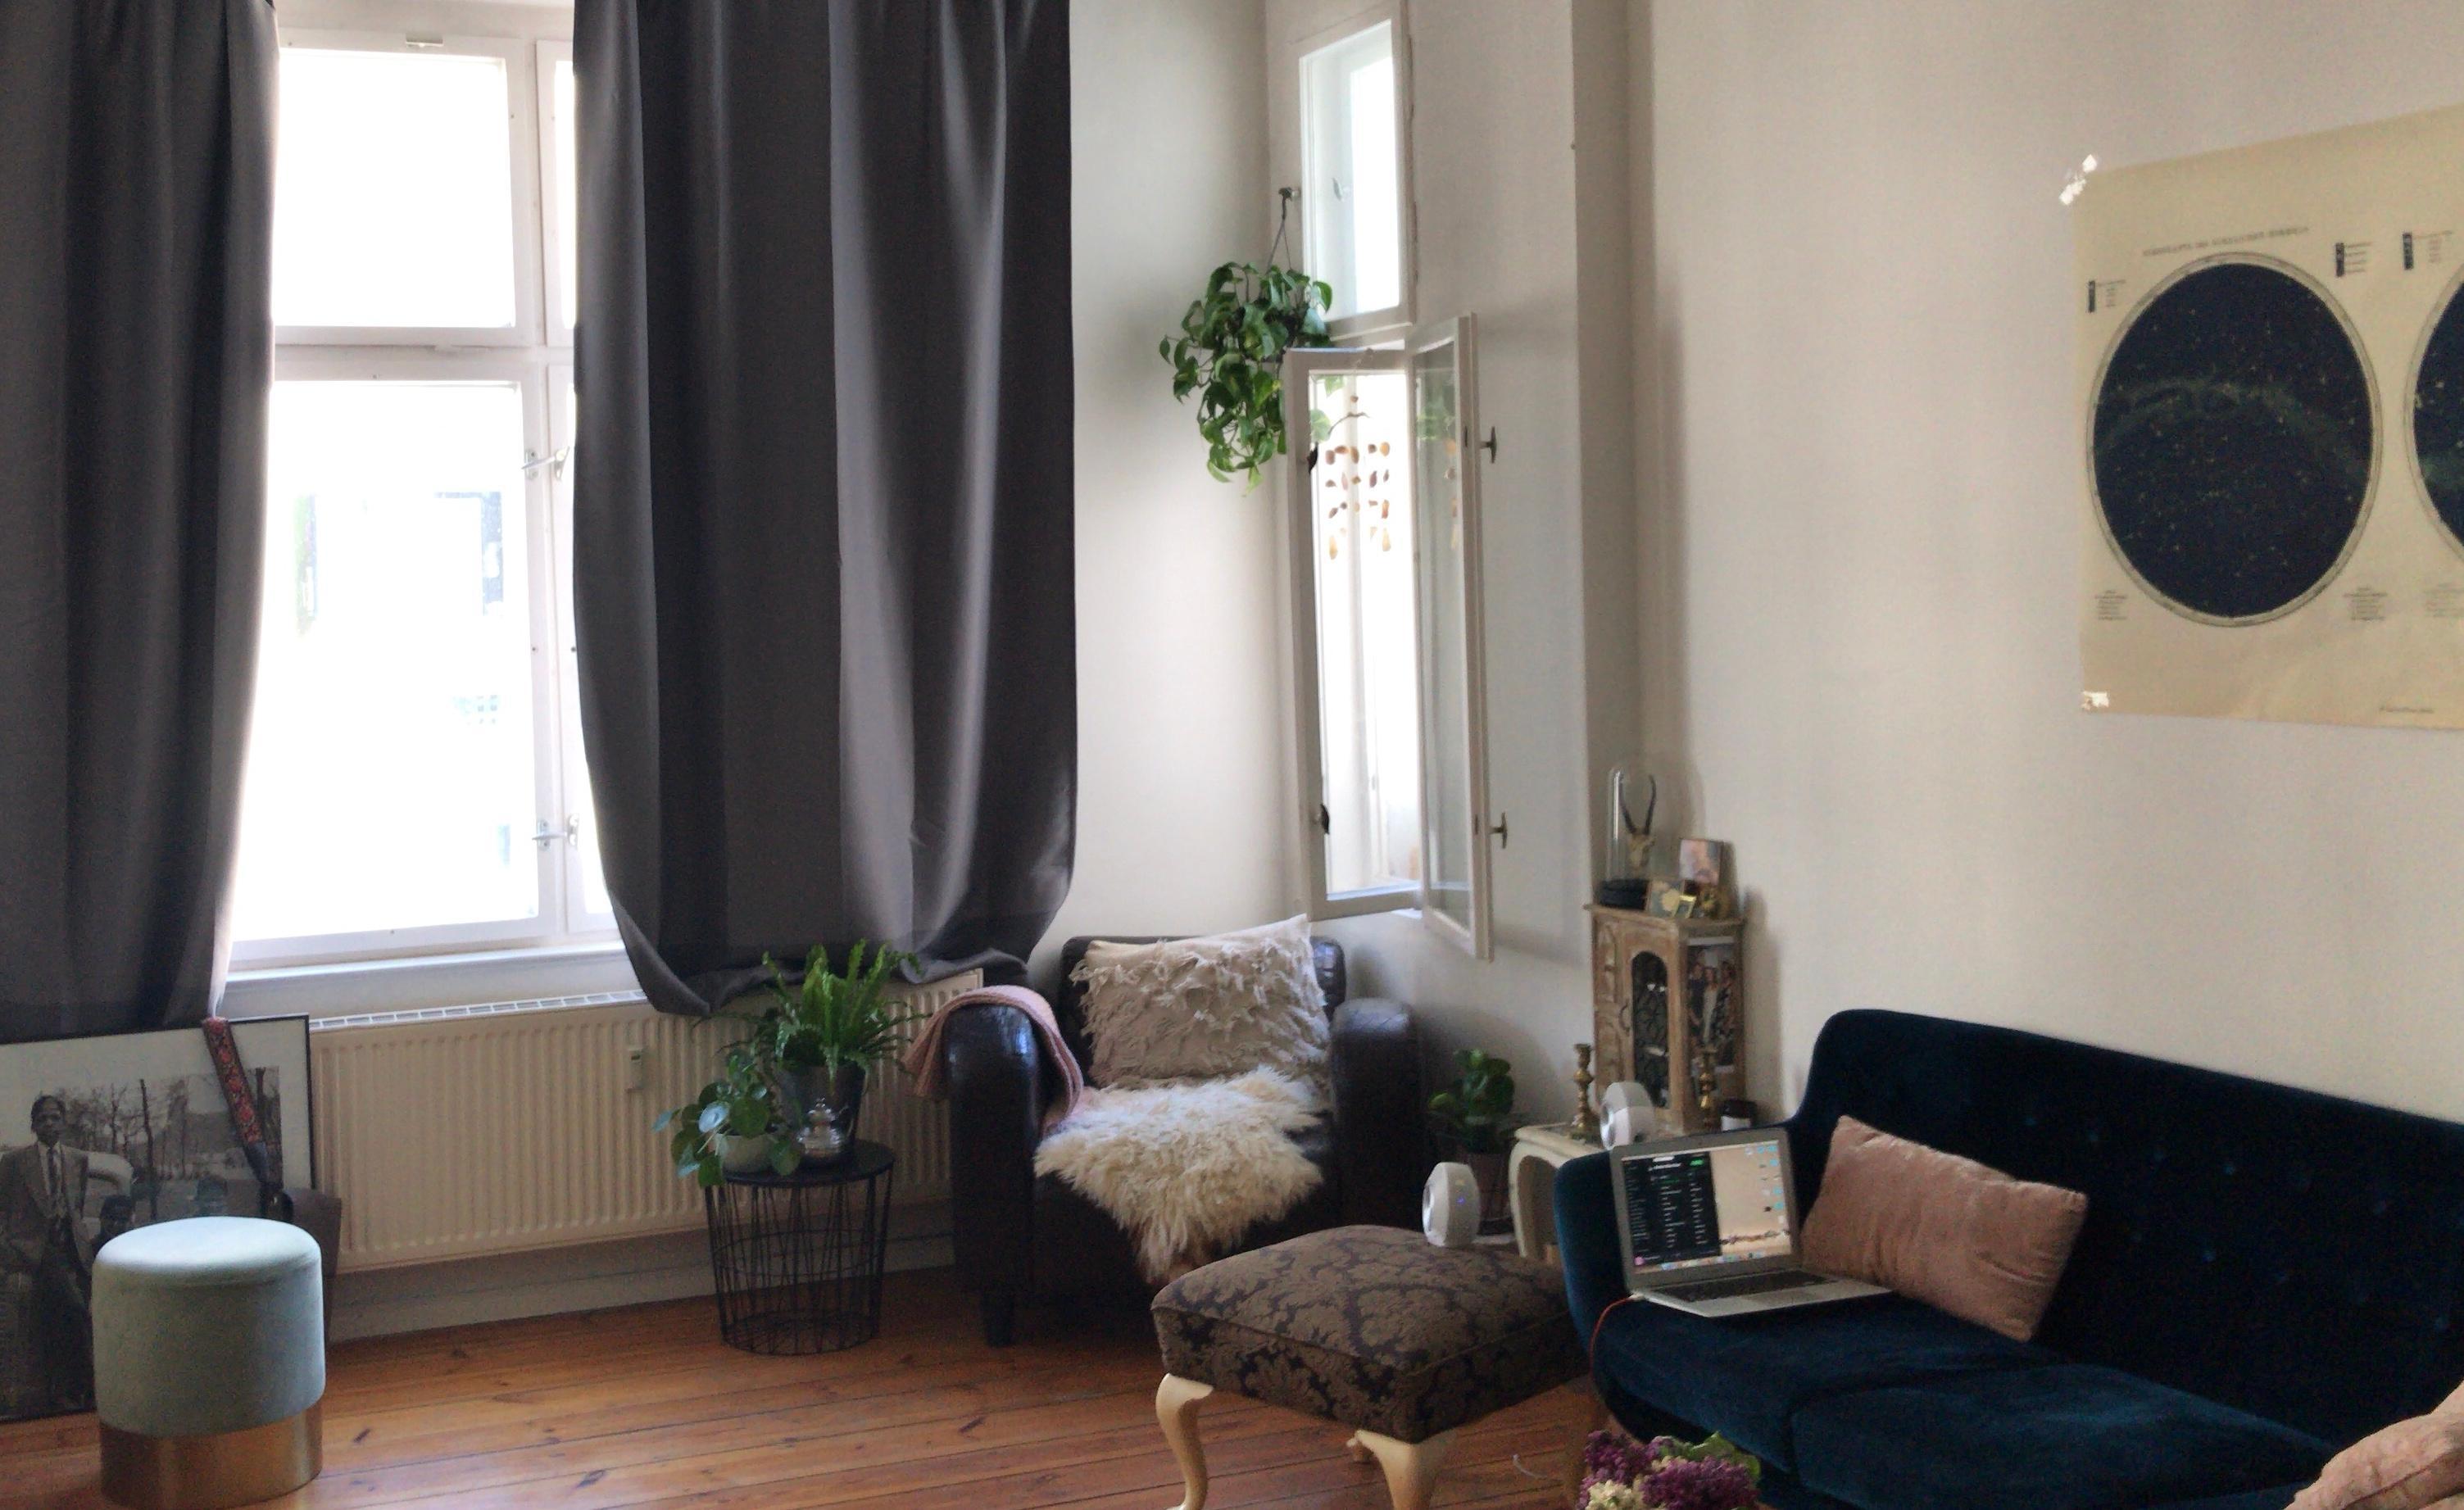 #livingroom 
#velvetcouch #plantsathome #sternkarte #samthocker #hauptstadtwohnung #holzdielen #lammfell 